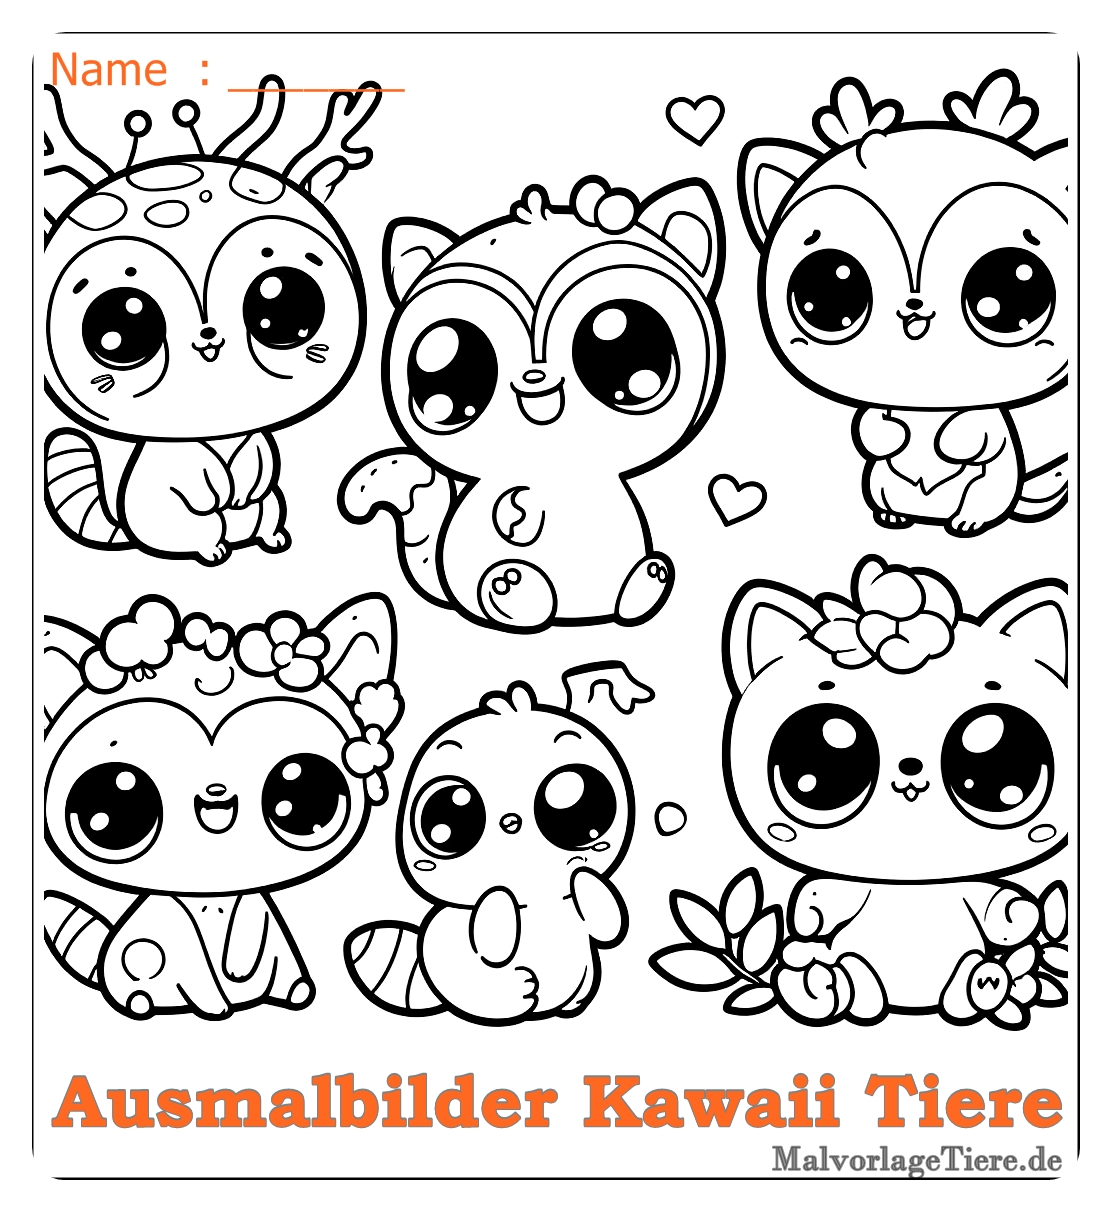 Süß ausmalbilder kawaii tiere 18 by malvorlagetiere.de